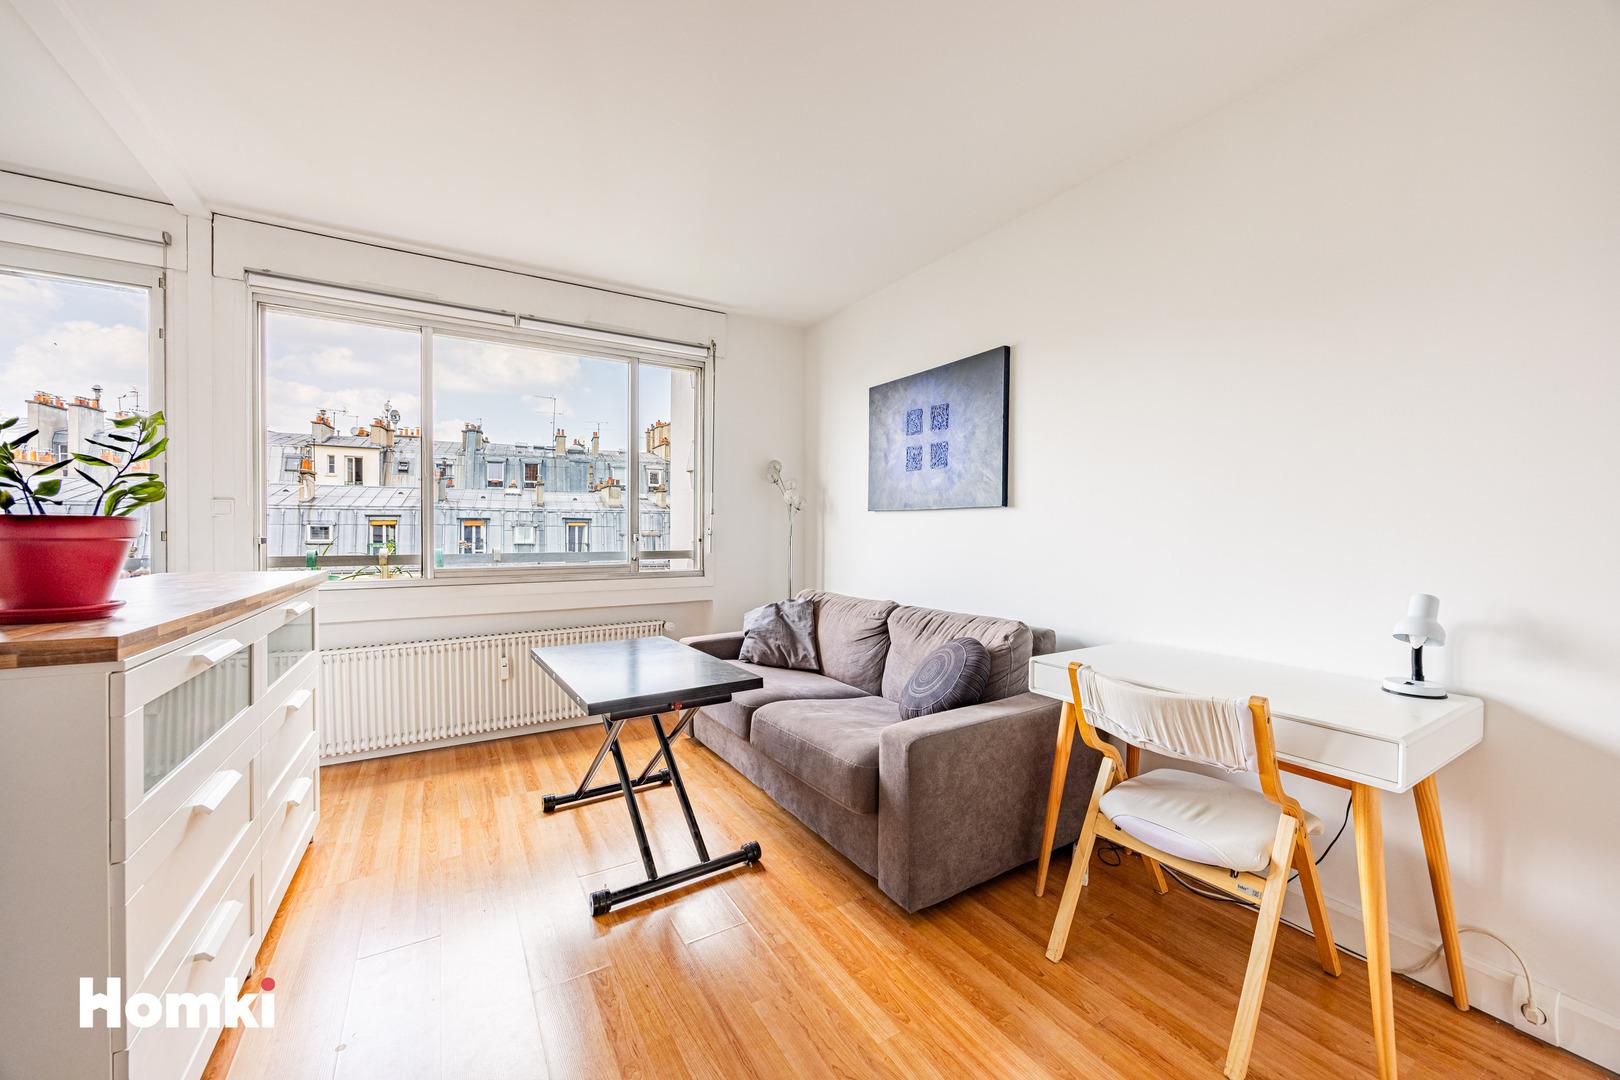 Homki - Vente Appartement  de 30.0 m² à Paris 75011